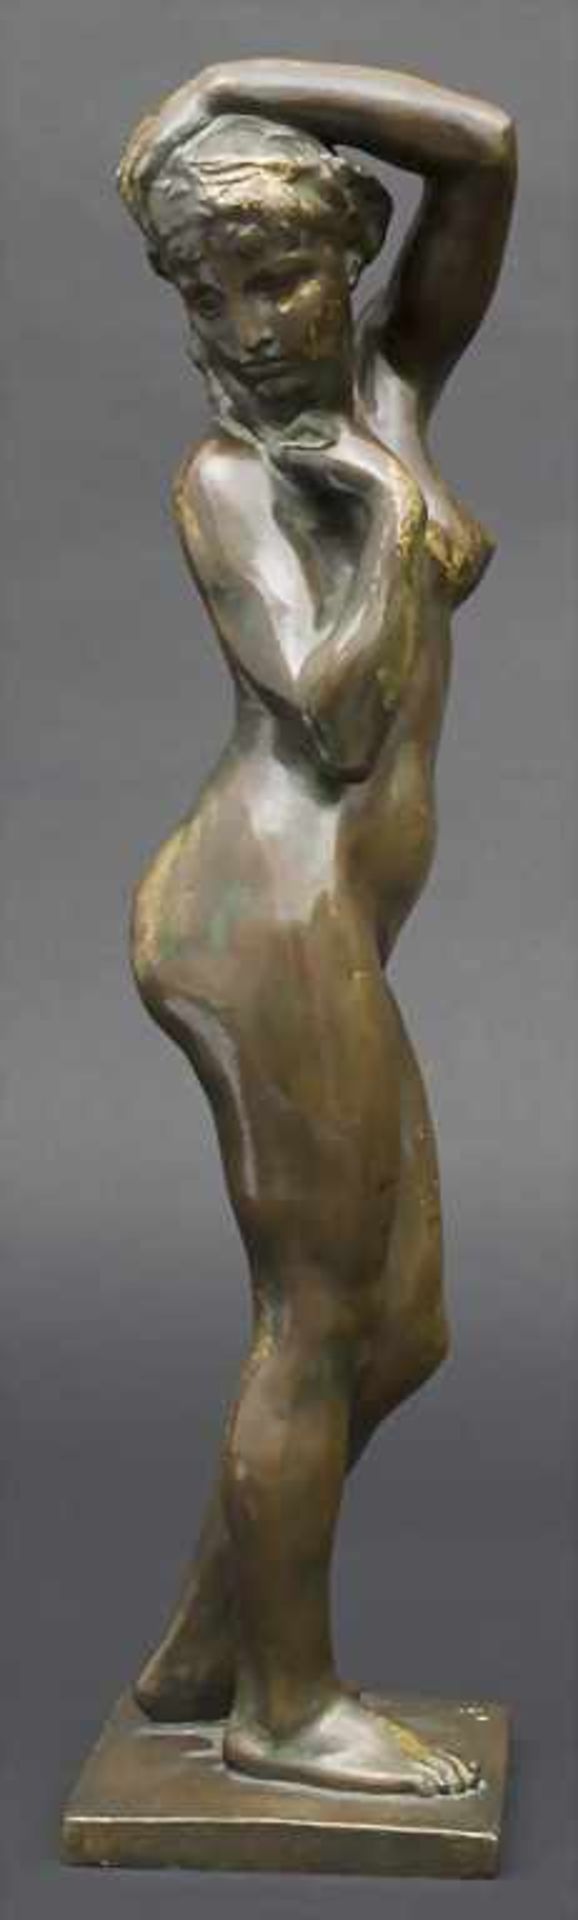 Frans Huygelen 1878-1940, Jugendstil Bronze, Weiblicher Akt / An Art Nouveau bronze sculpture of a - Image 4 of 6